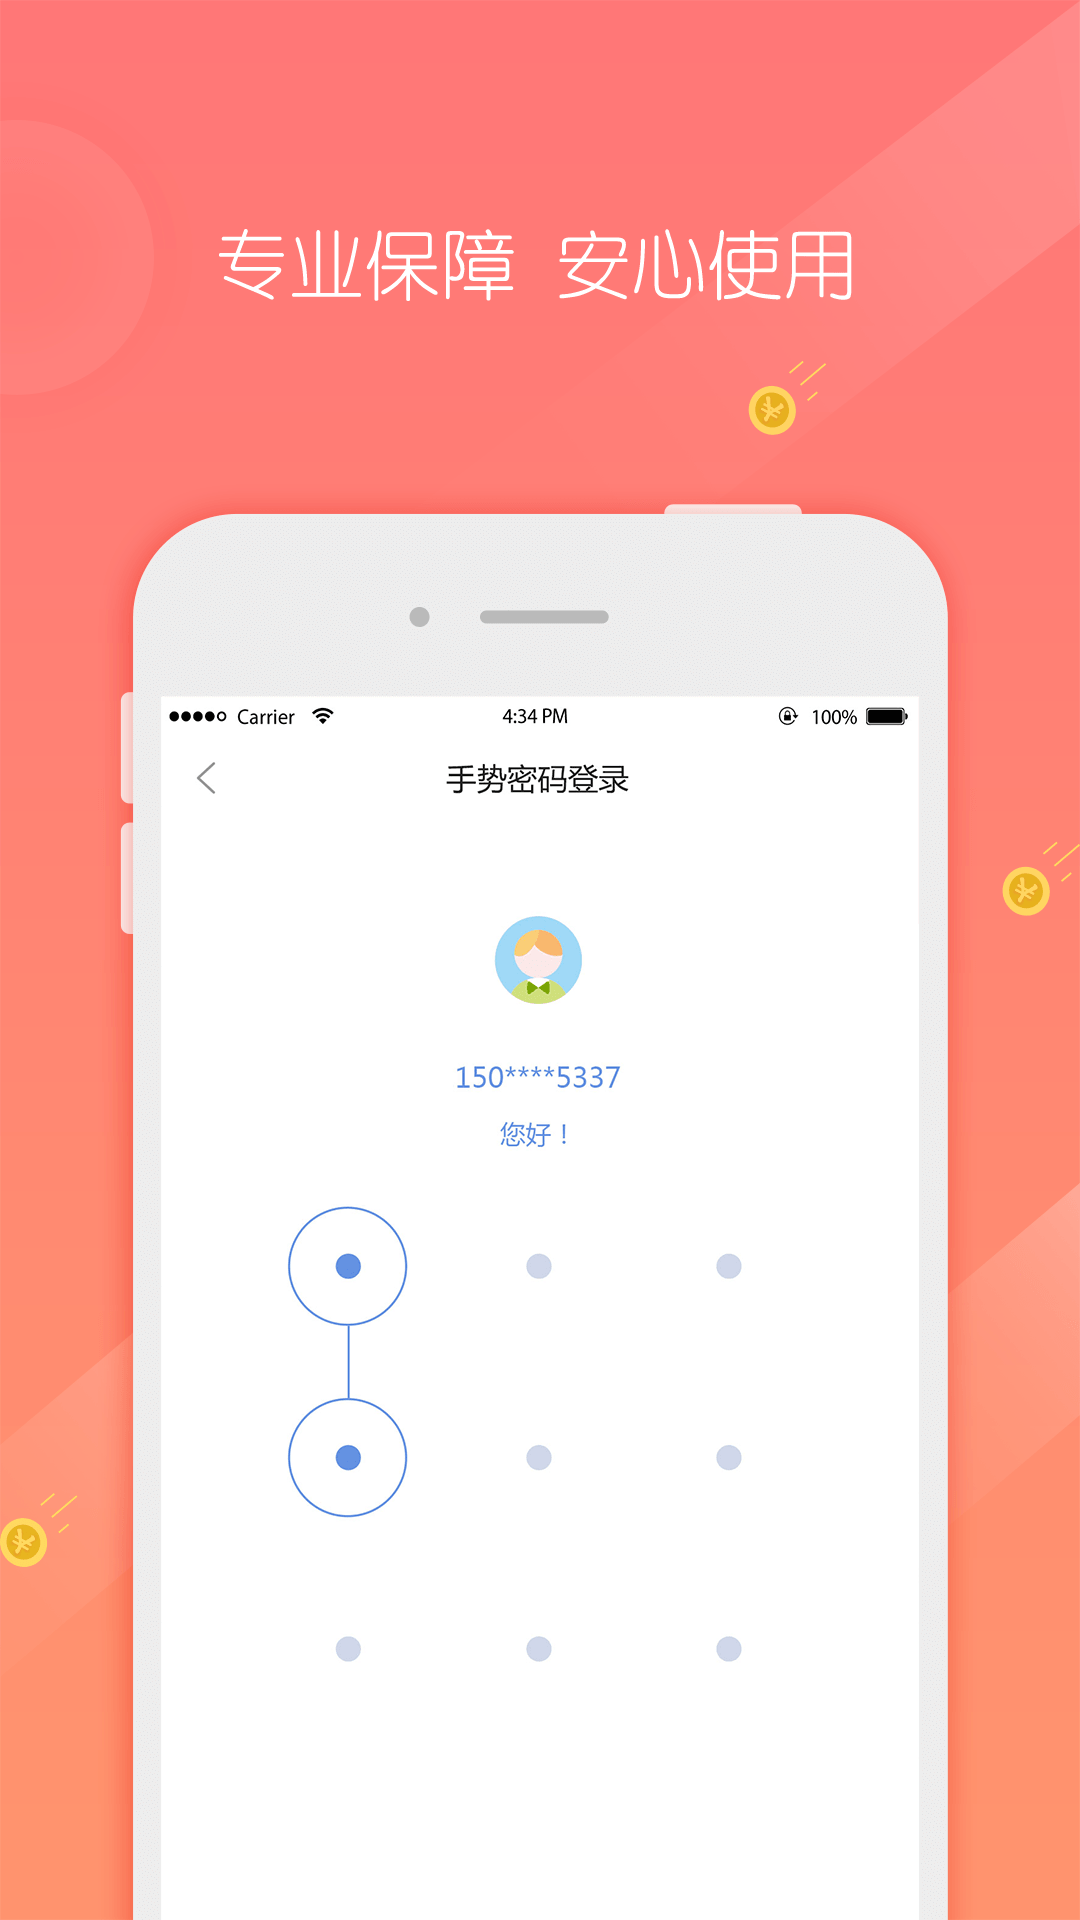 阳泉商行v1.3.2.0 安卓版(阳泉市商业银行)_阳泉商业银行app下载